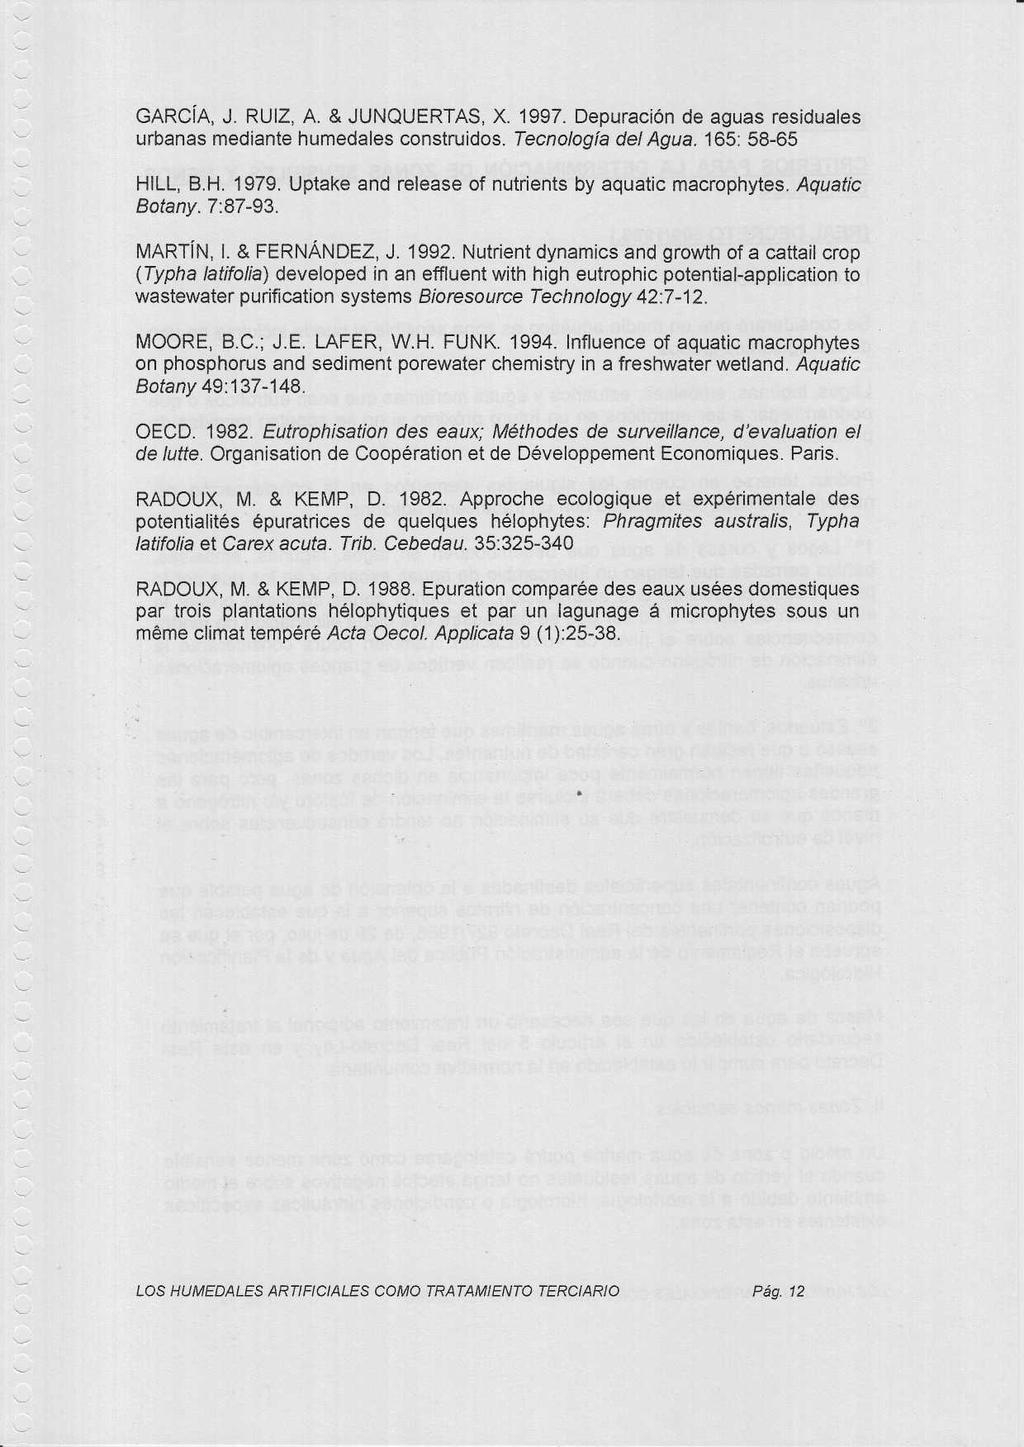 GARCÍA, J. RUIZ, A. & JUNQUERTAS, X. 1997. Depuración de aguas residuale s urbanas mediante humedales construidos. Tecnología del Agua. 165: 58-65 HILL, B.H. 1979.